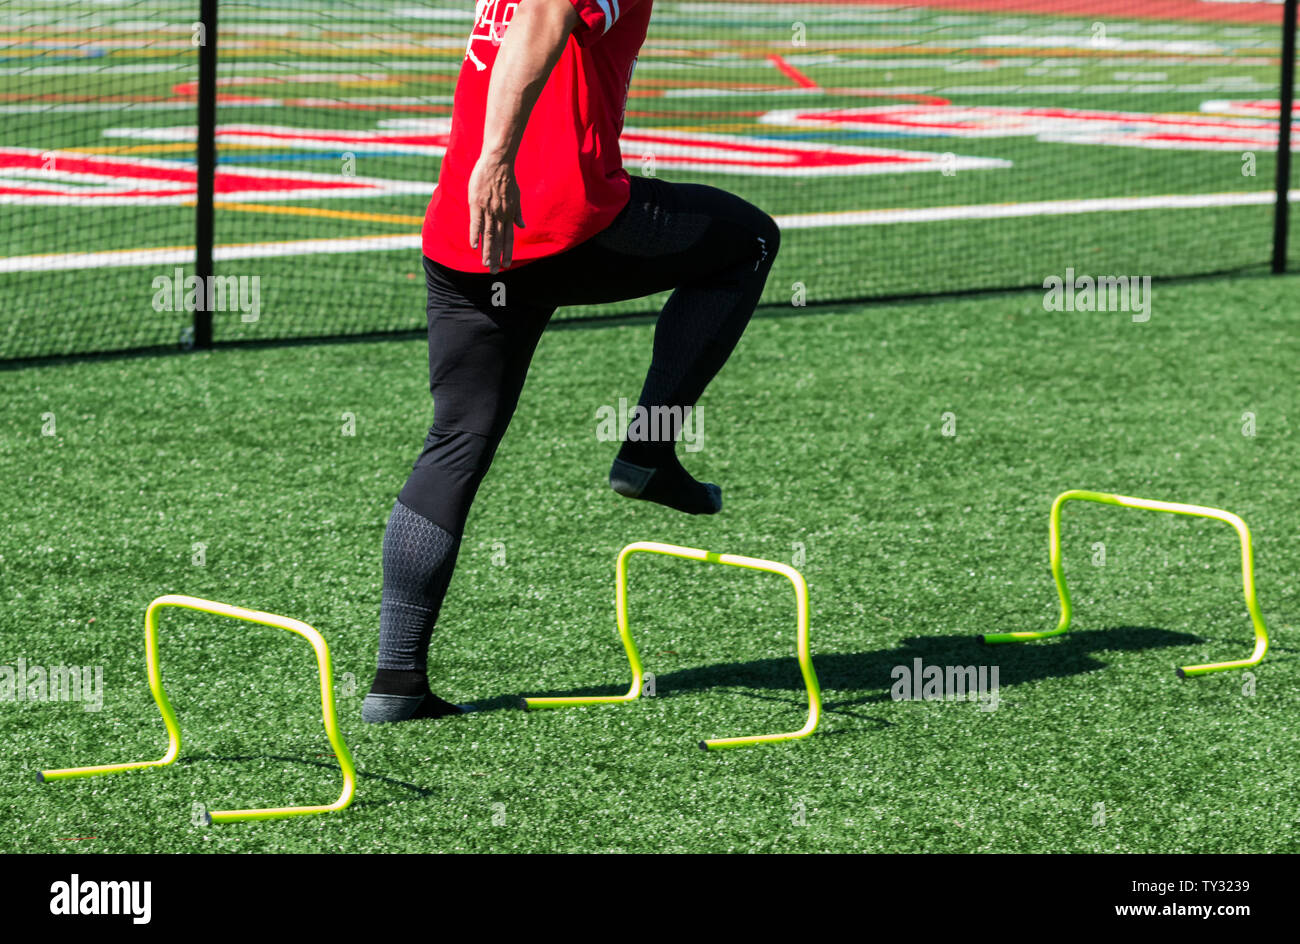 Ein High School Leichtathlet verstärkt über Gelb mini Hürden ohne Schuhe am Fuß Stärke entwickeln zu helfen. Stockfoto